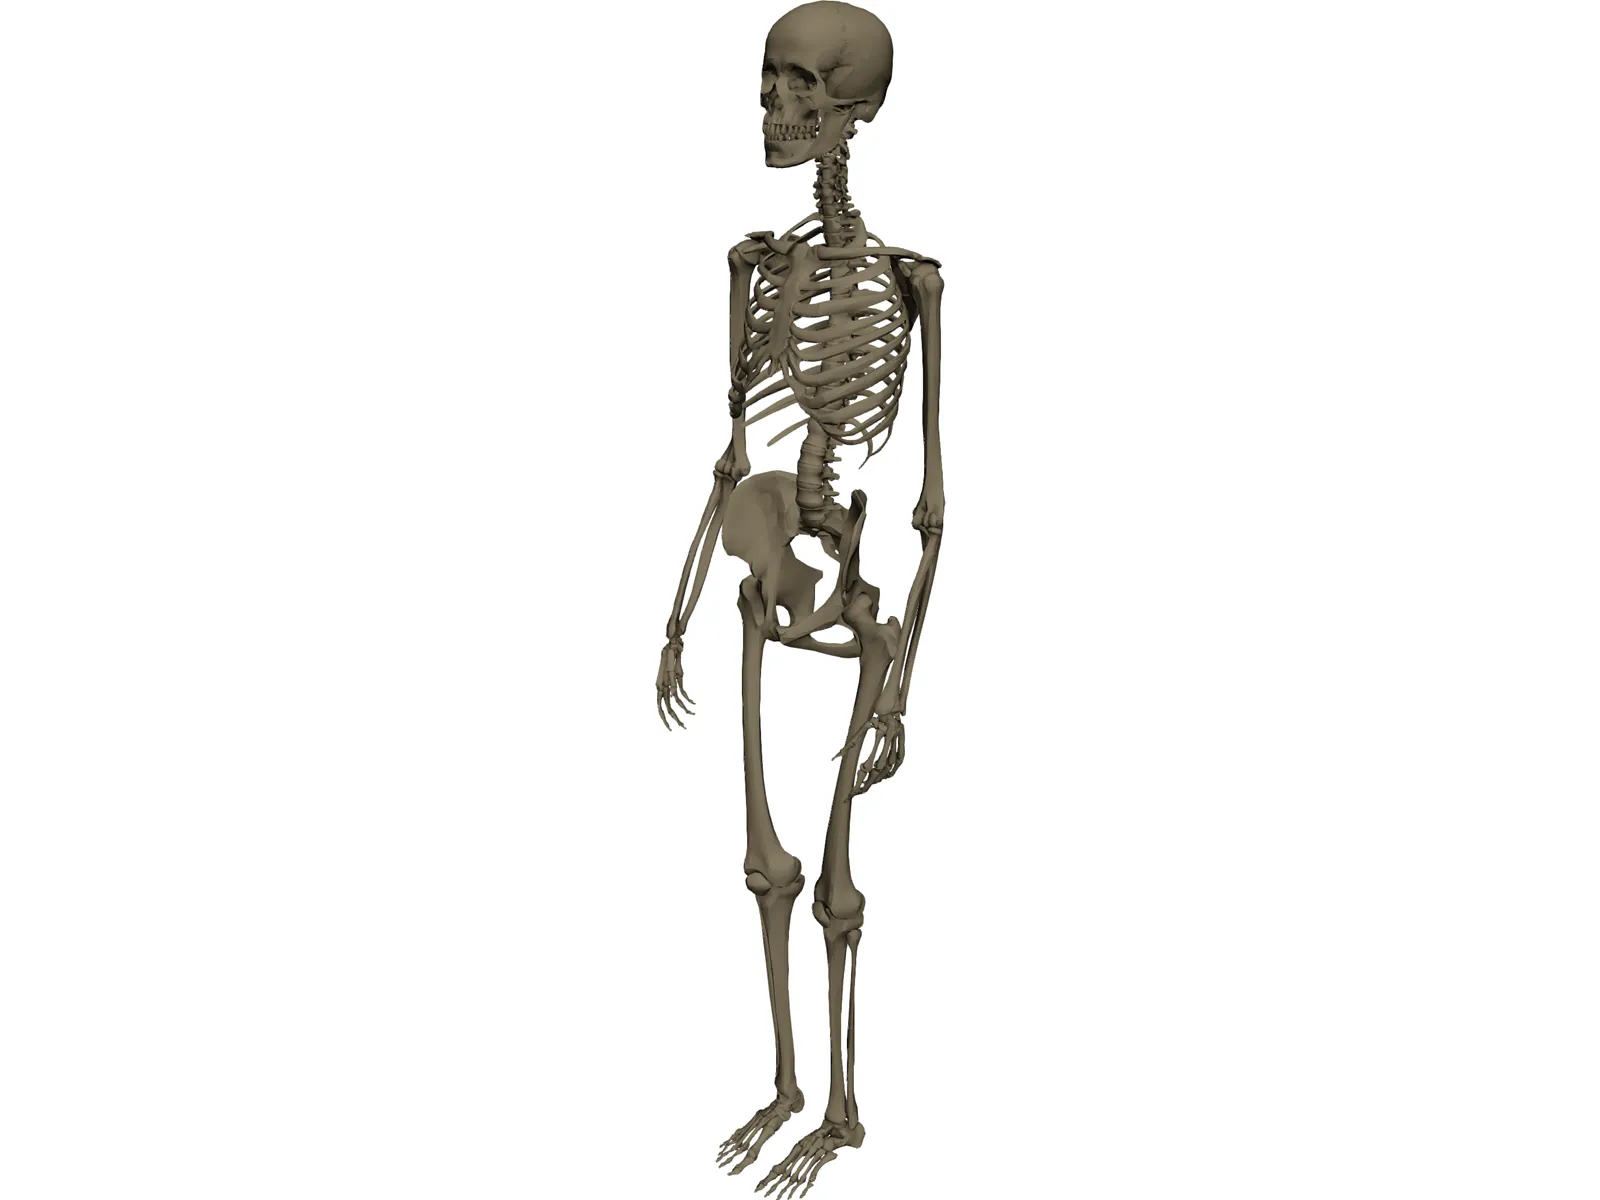 Skeleton Female 3D Model